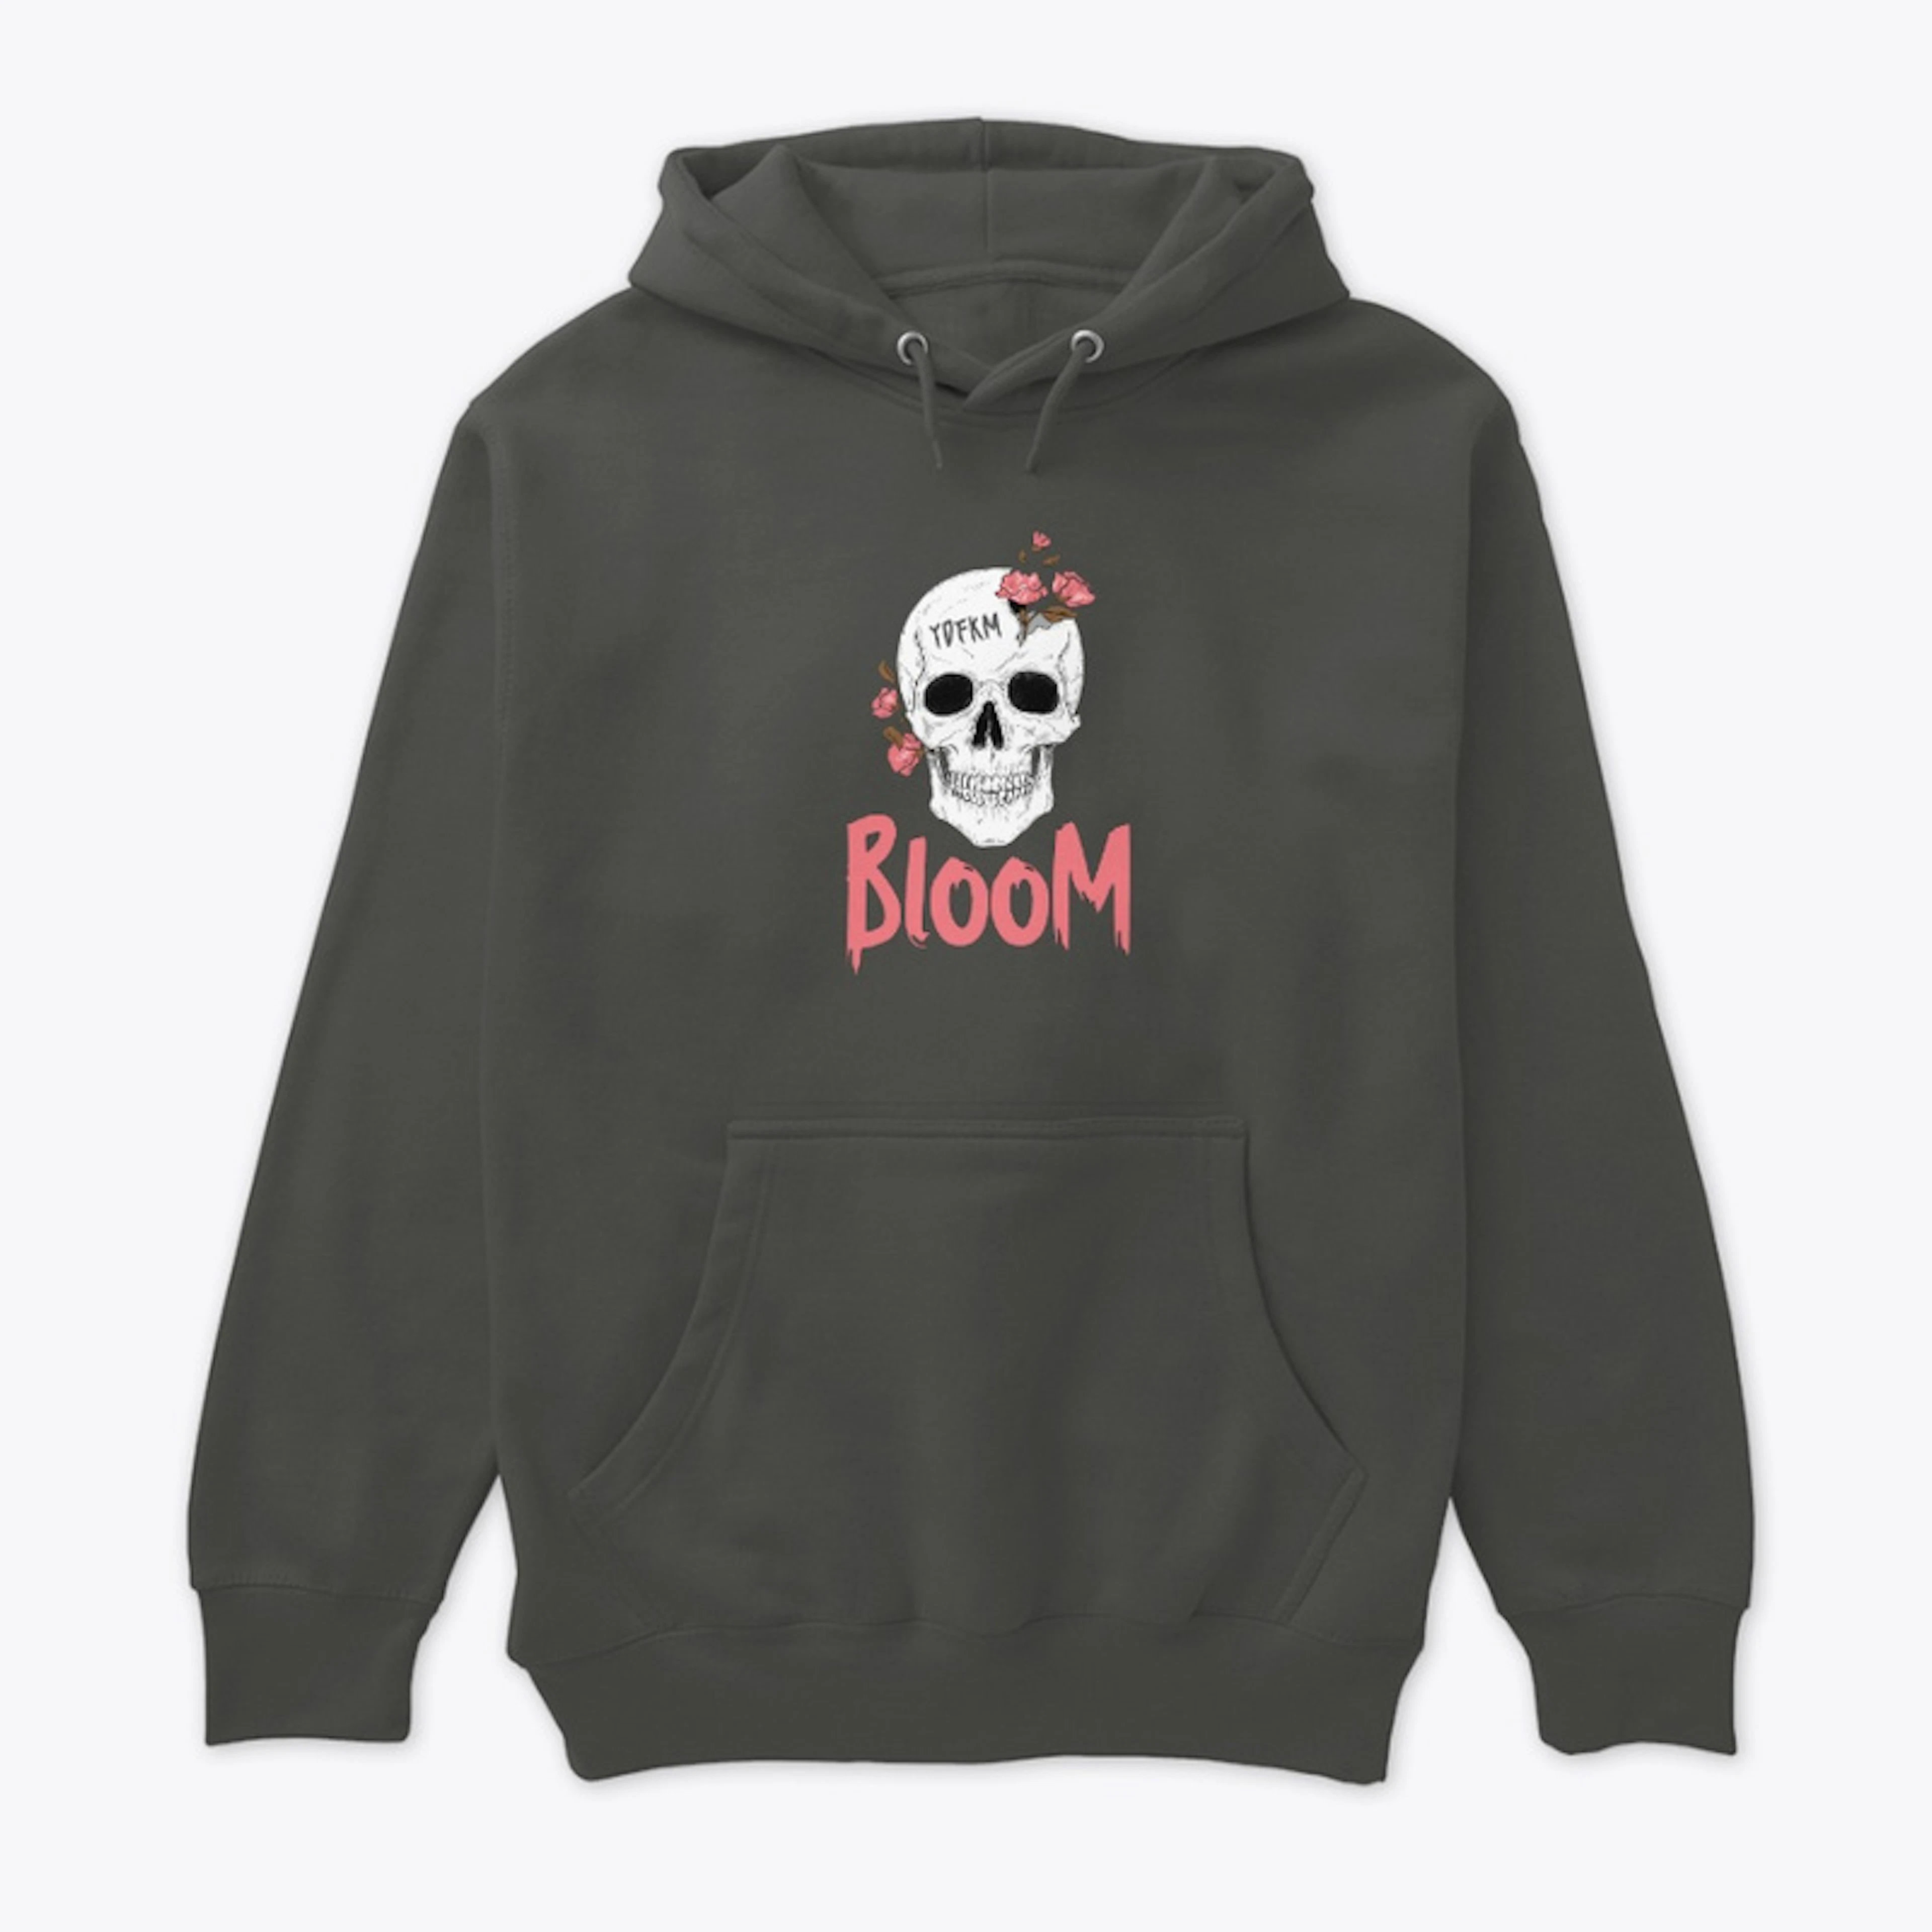 Bloom skull